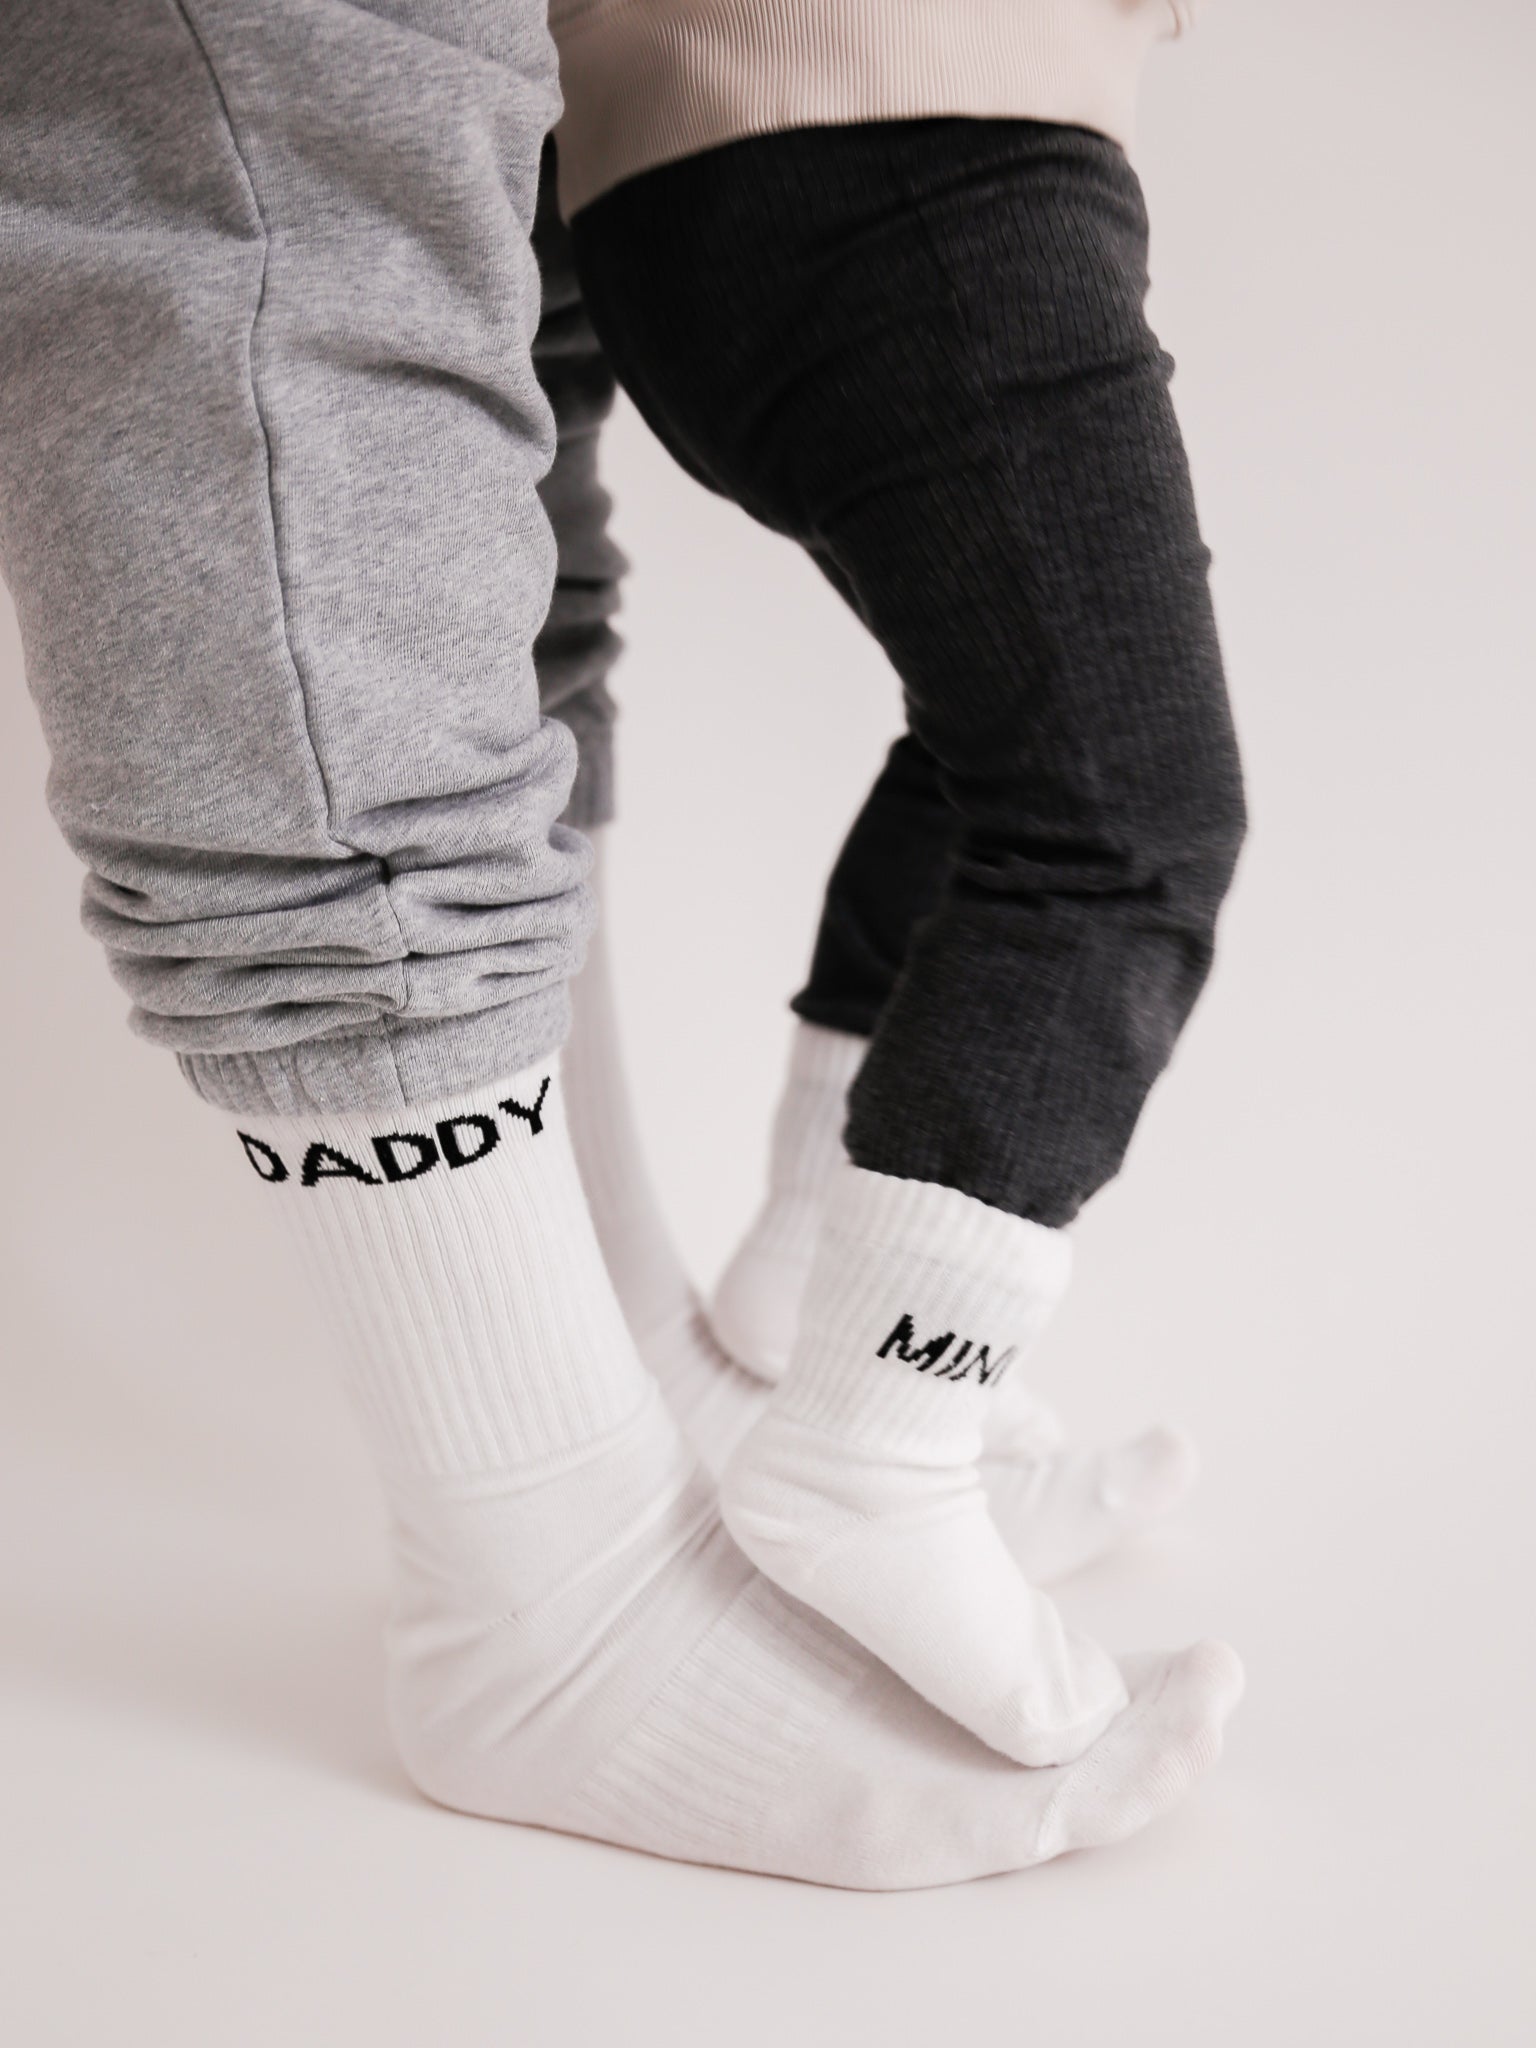 DADDY - Socken weiß - FAMVIBES 